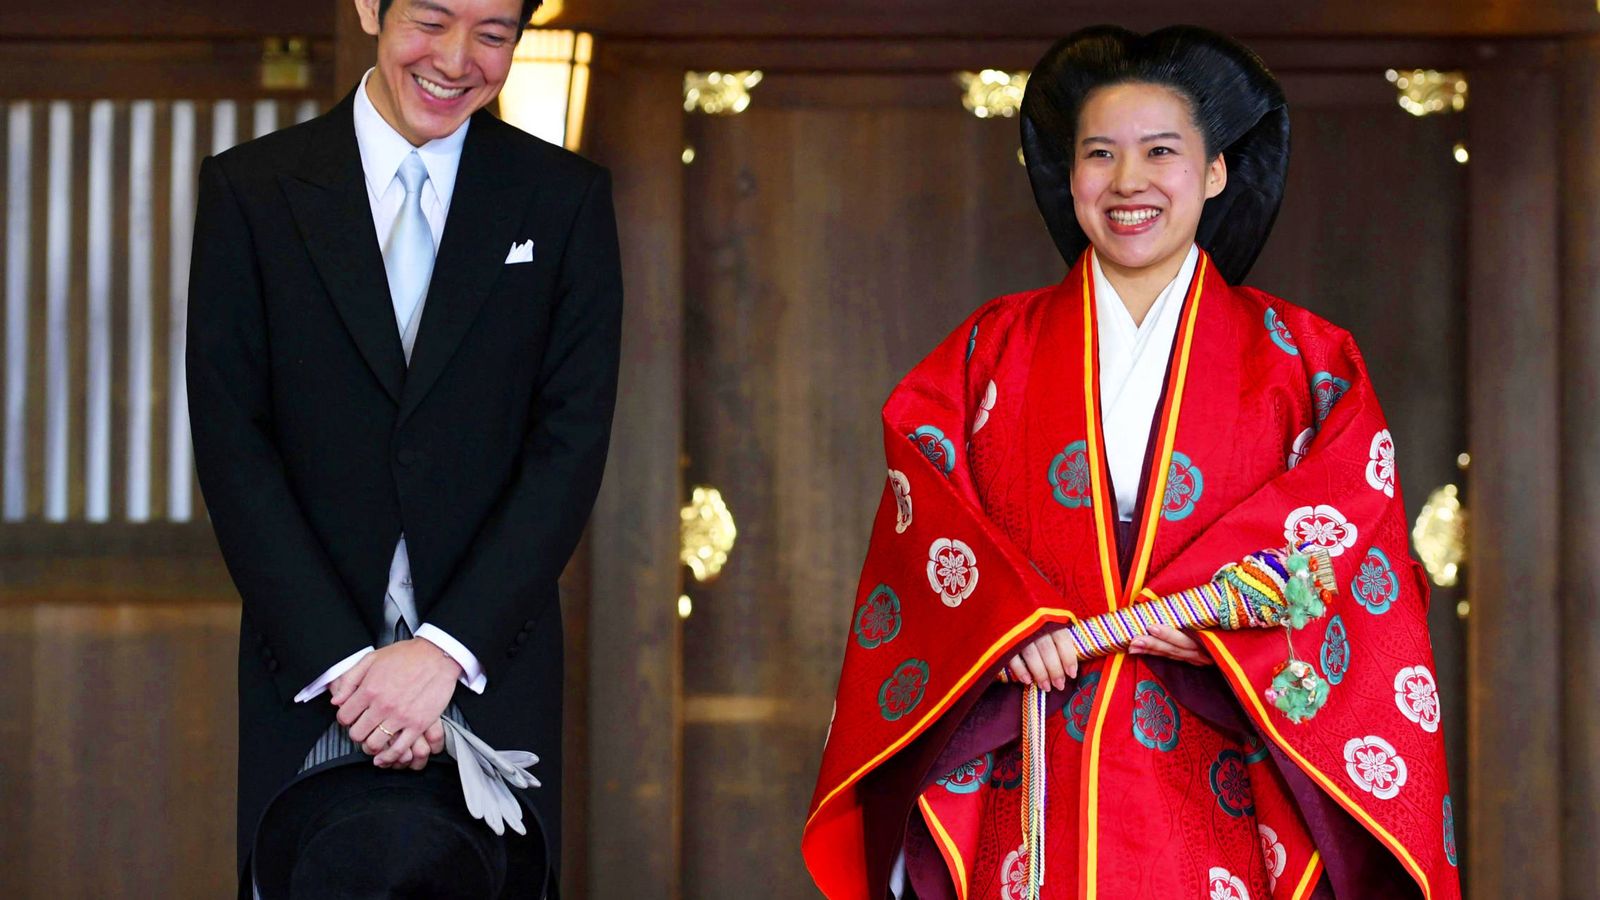 Foto: La boda de Ayako de Japón. (Reuters)